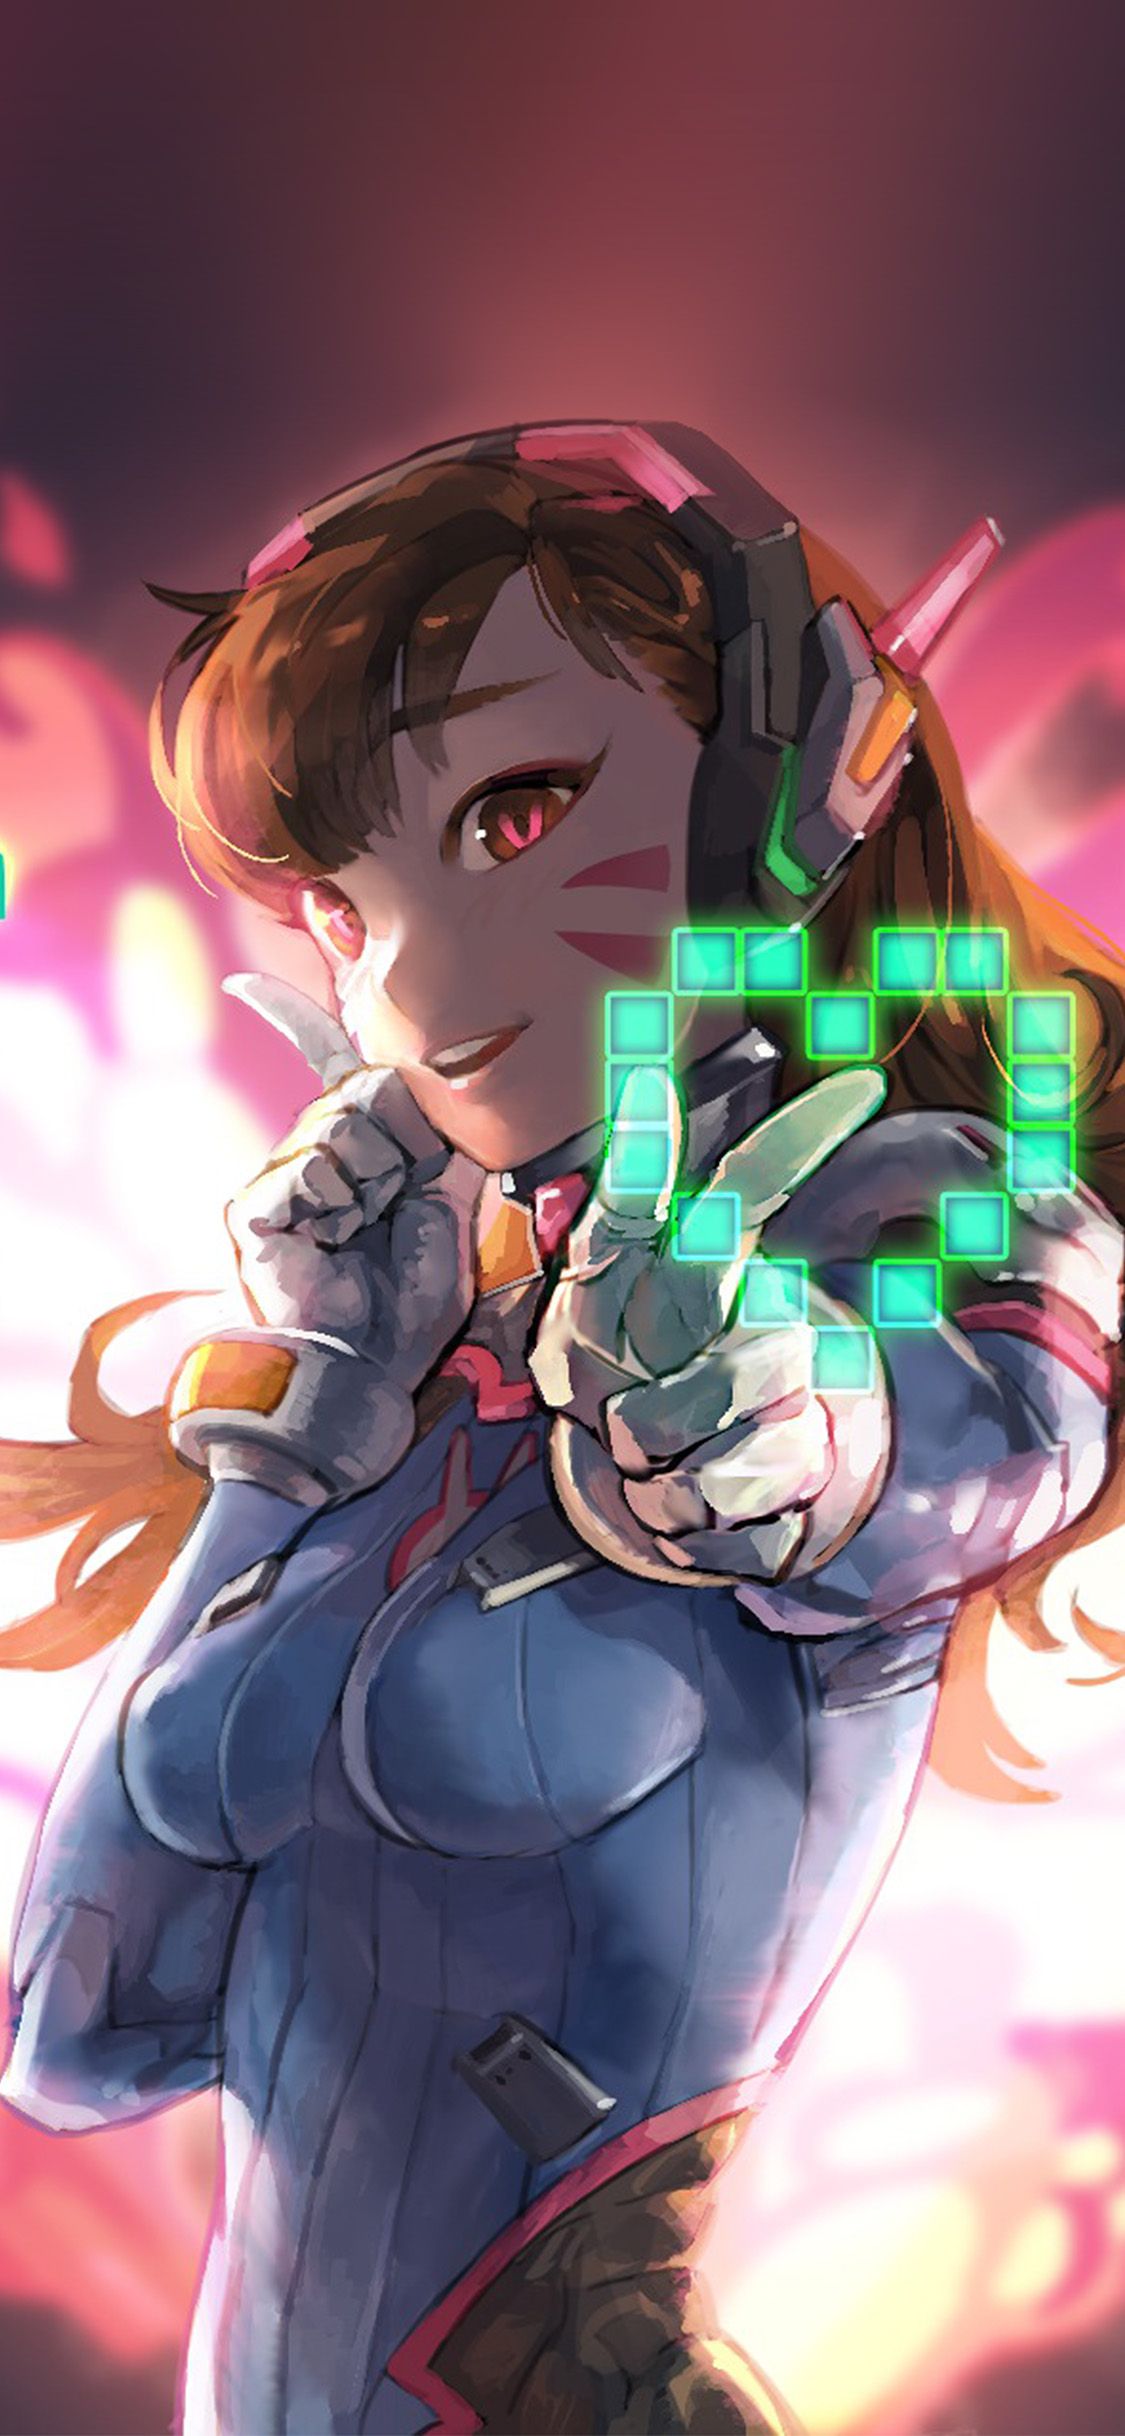 Wallpaper girl anime gamer Anime Gamer